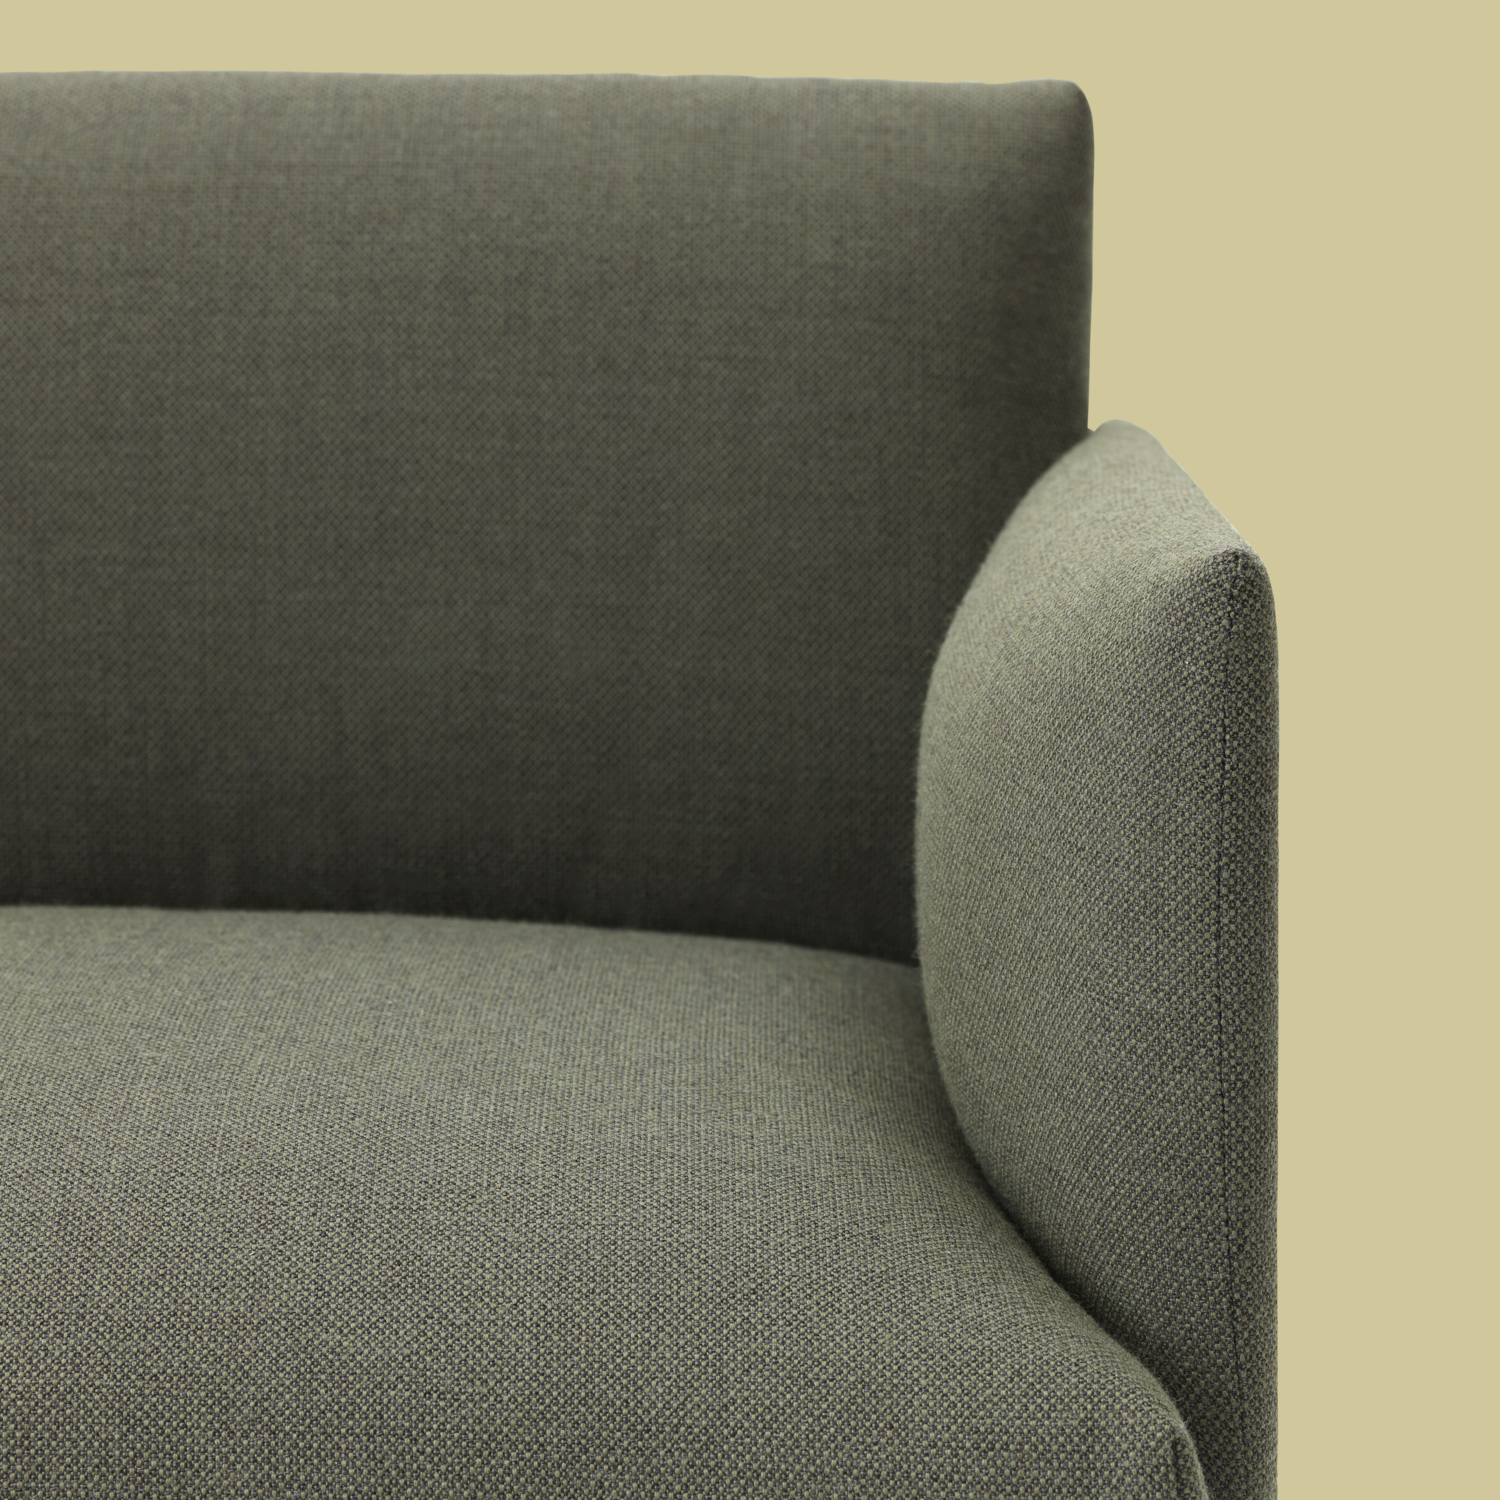 Outline 3er Sofa in Grün / Schwarz präsentiert im Onlineshop von KAQTU Design AG. 3er Sofa ist von Muuto